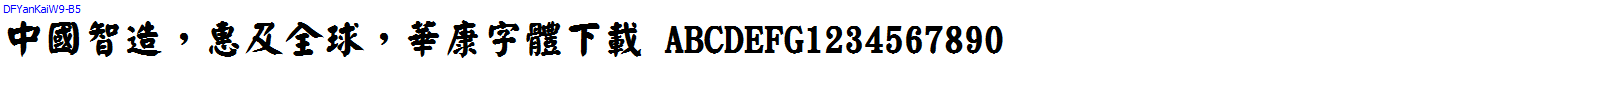 華康字體DFYanKaiW9-B5.TTF